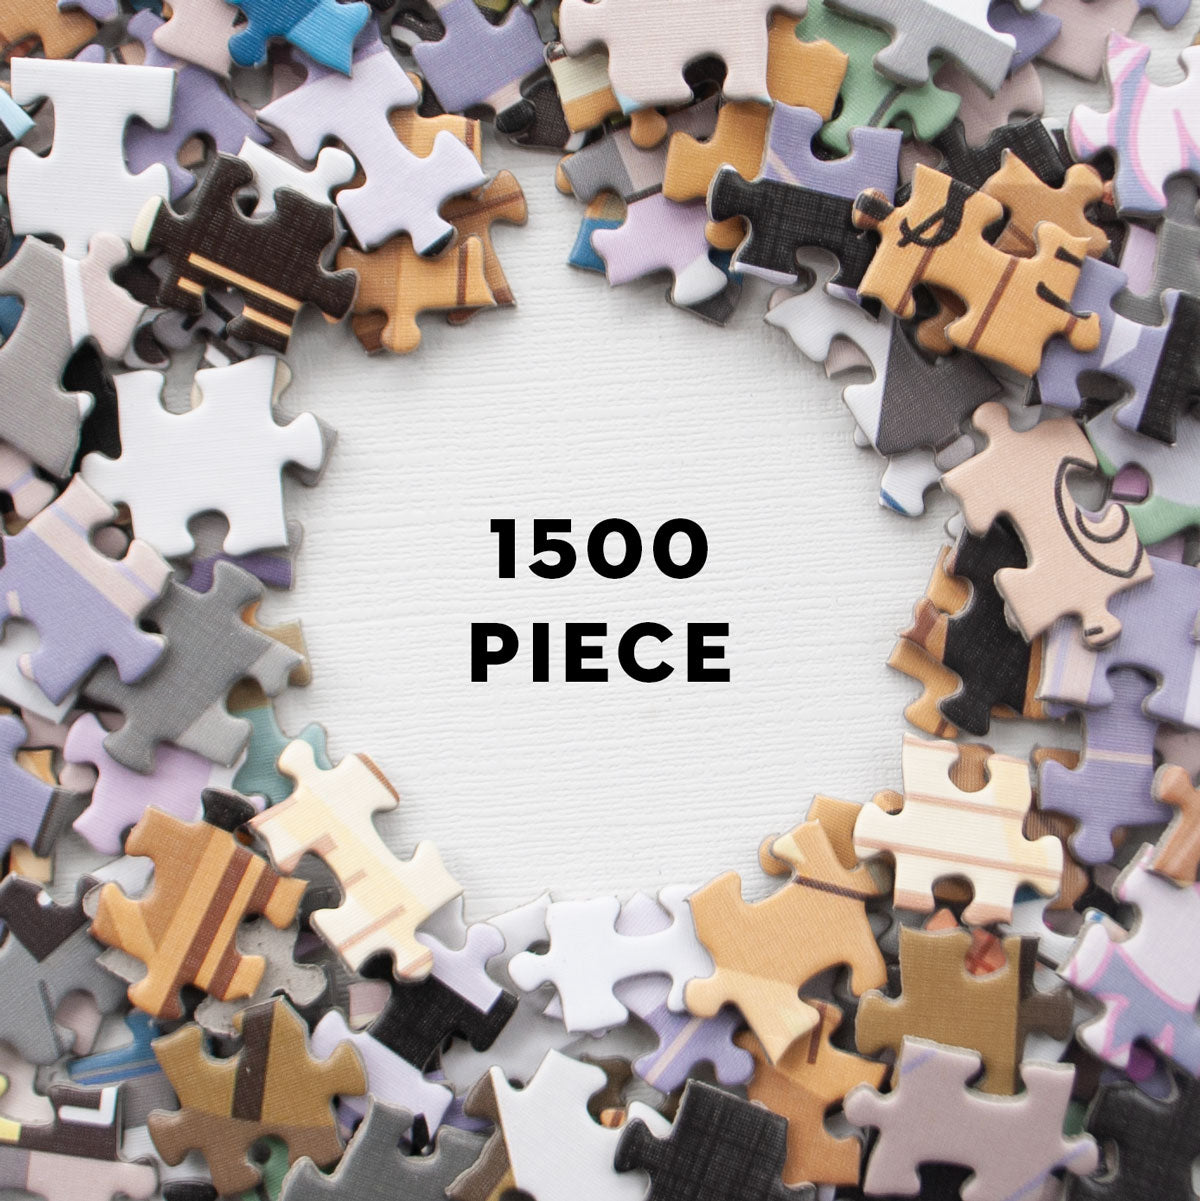 Puzzle Saint Petersburg, 1 500 pieces